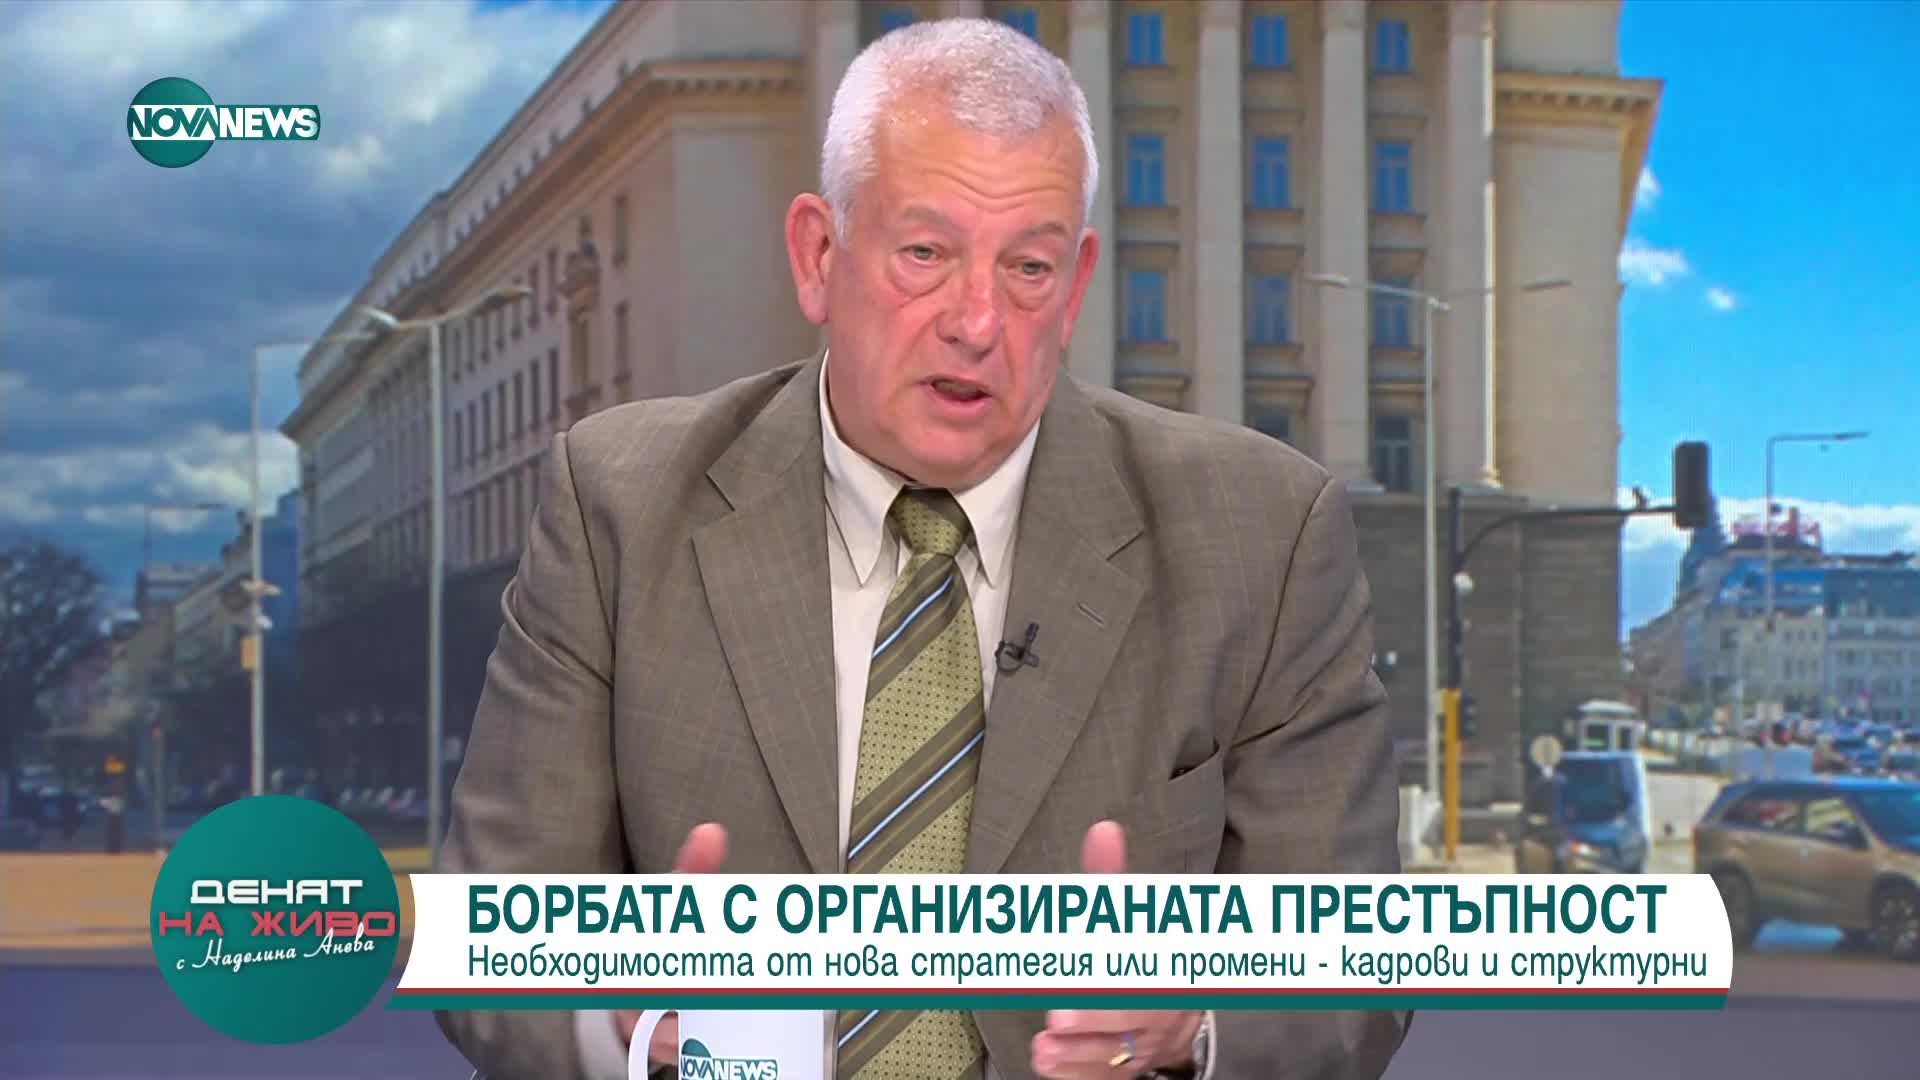 Тихомир Стойчев: Първата задача на новия МВР министър трябва да е актуализация на Стратегията за нац